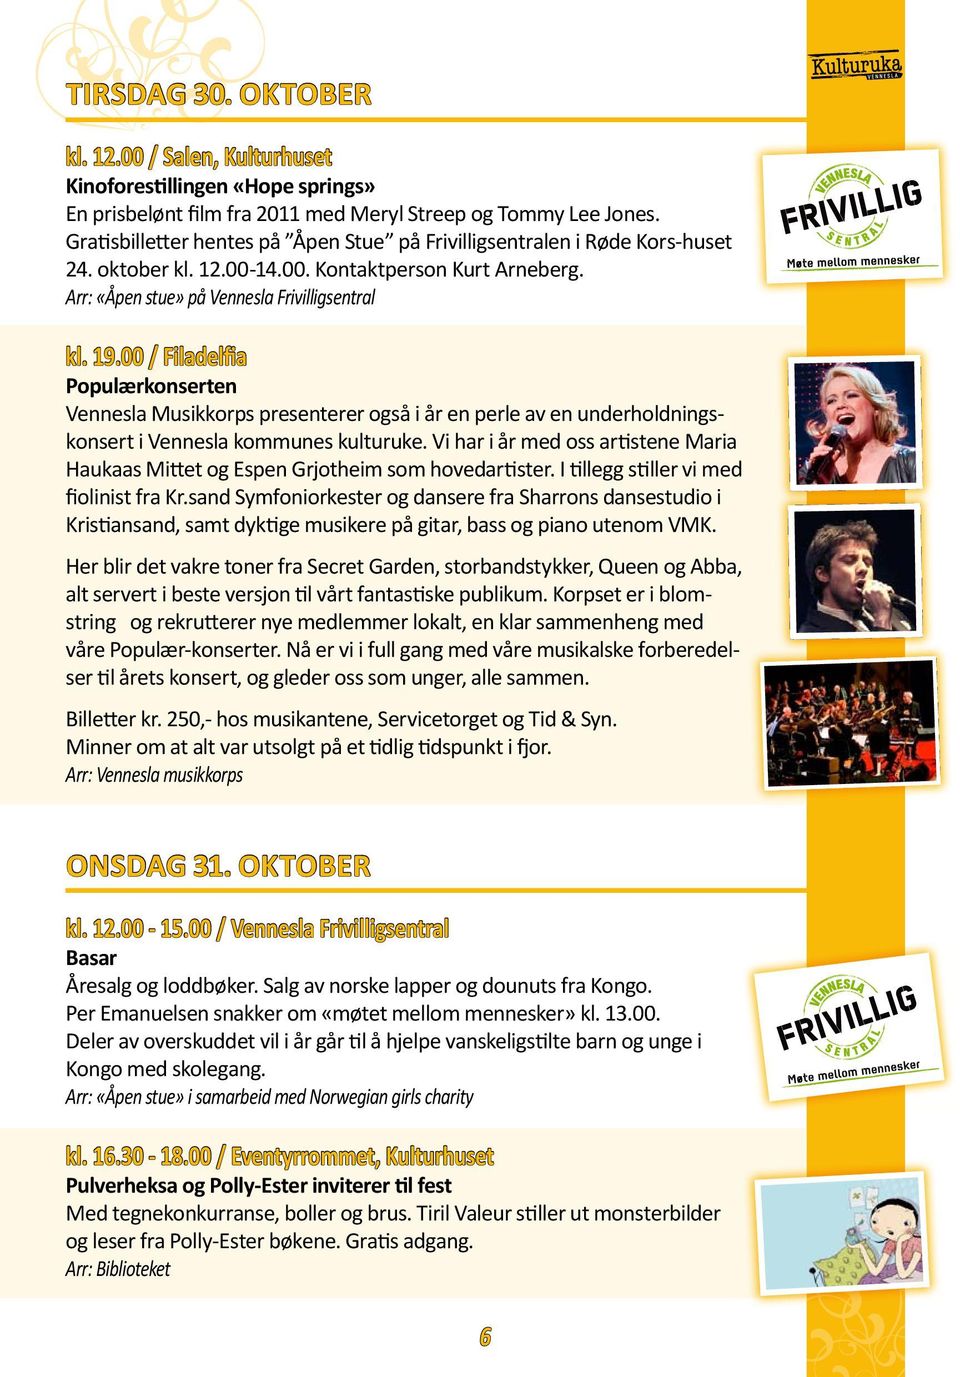 00 / Filadelfia Populærkonserten Vennesla Musikkorps presenterer også i år en perle av en underholdningskonsert i Vennesla kommunes kulturuke.